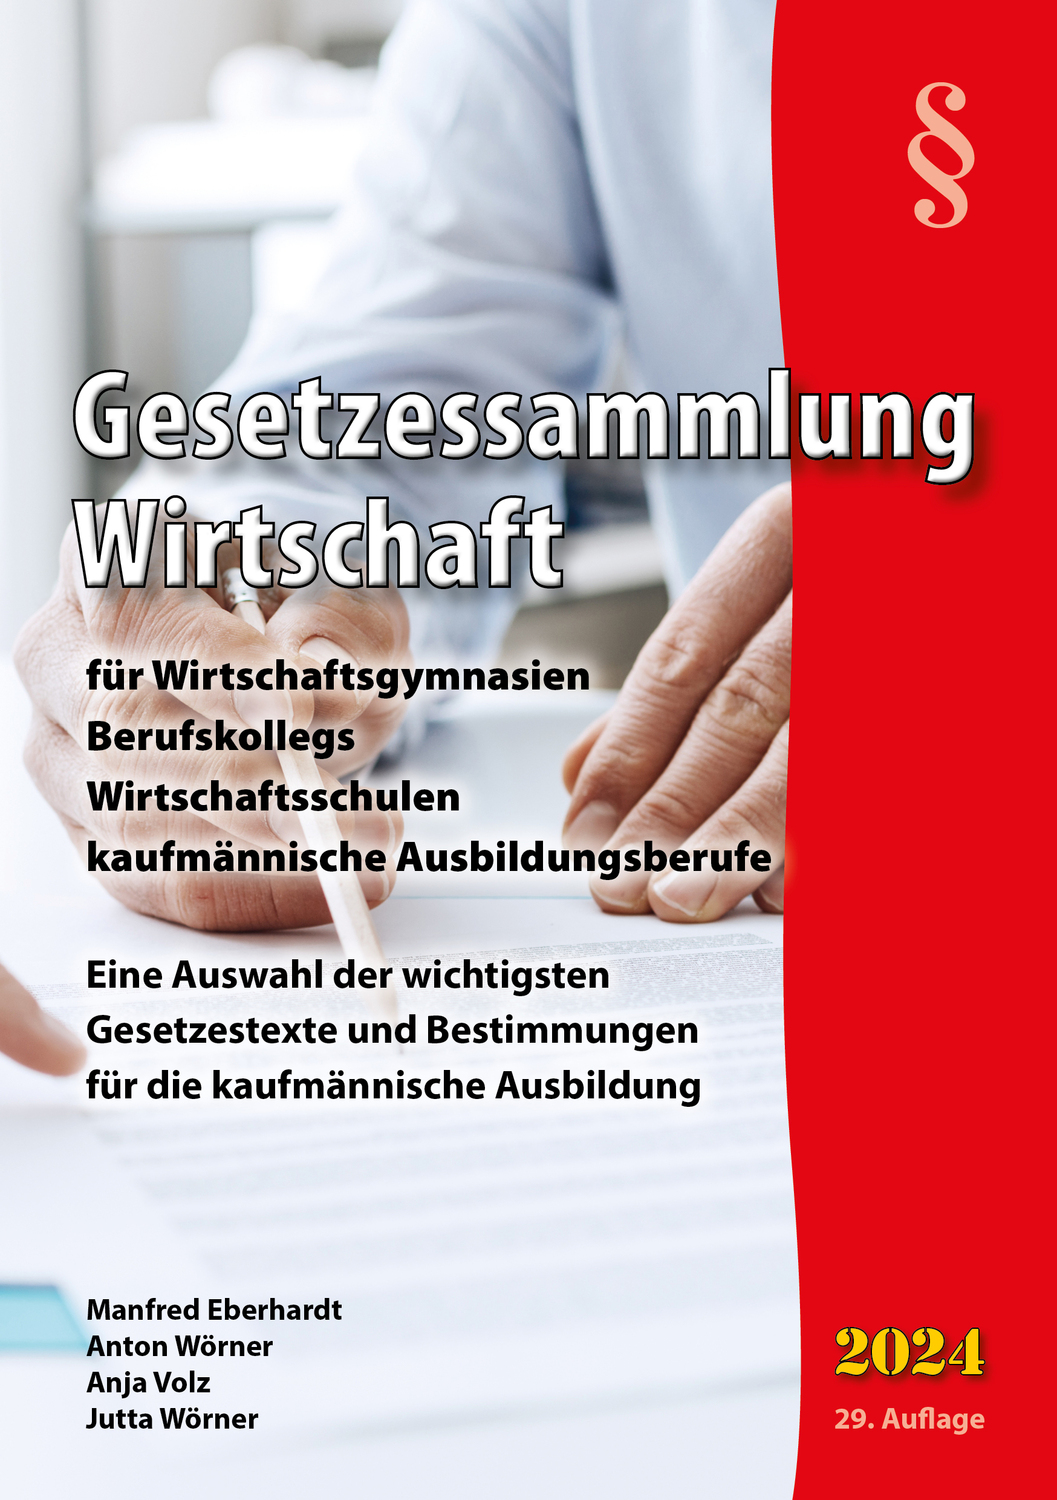 ISBN 9783938538005 "Gesetzessammlung Wirtschaft 2020 - für Wirtschaftsgymnasien, Berufskollegs ...